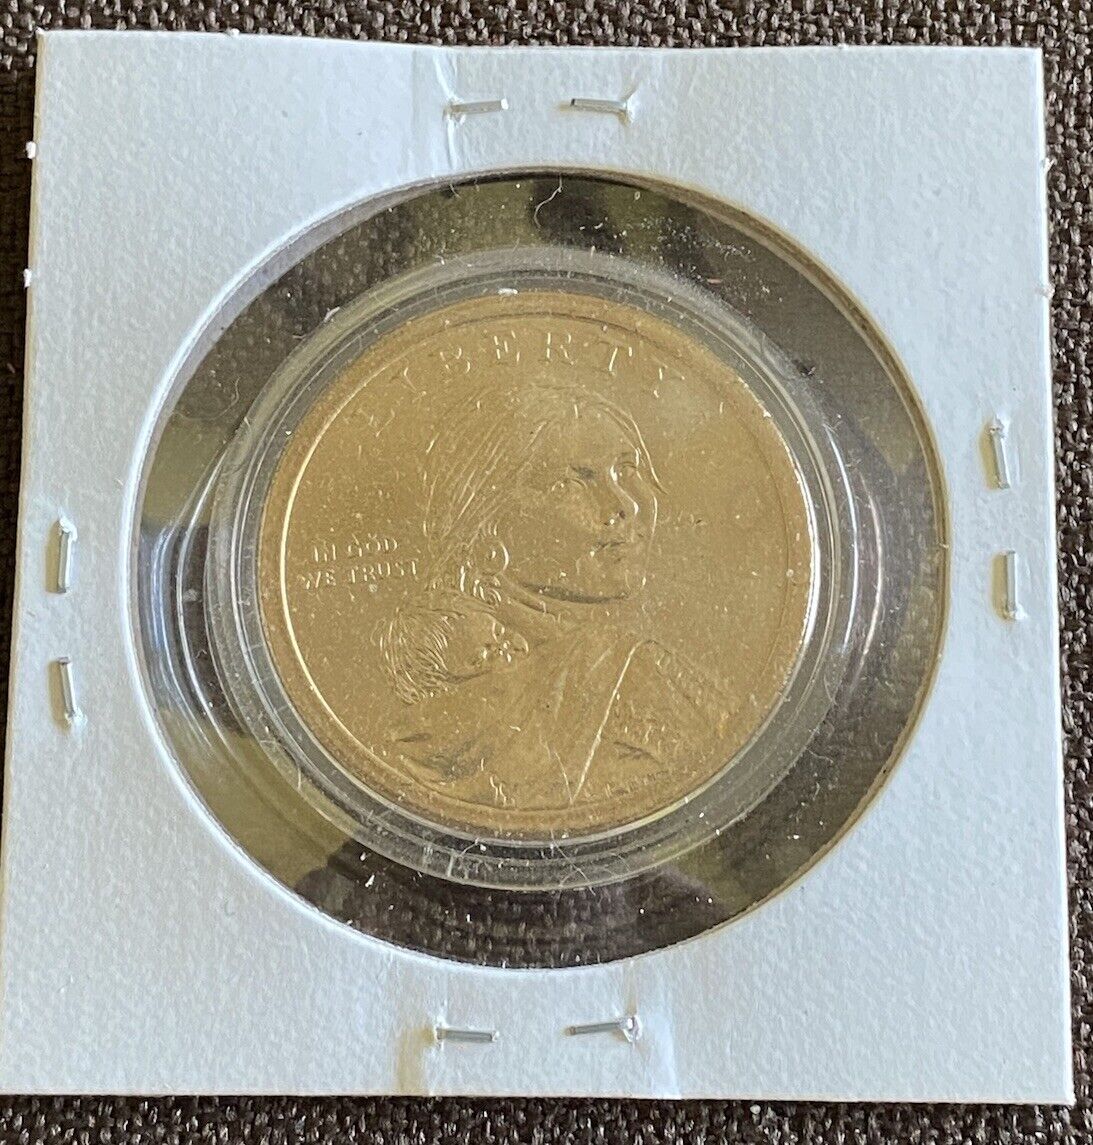 2010 P Sacagawea $1 Coin